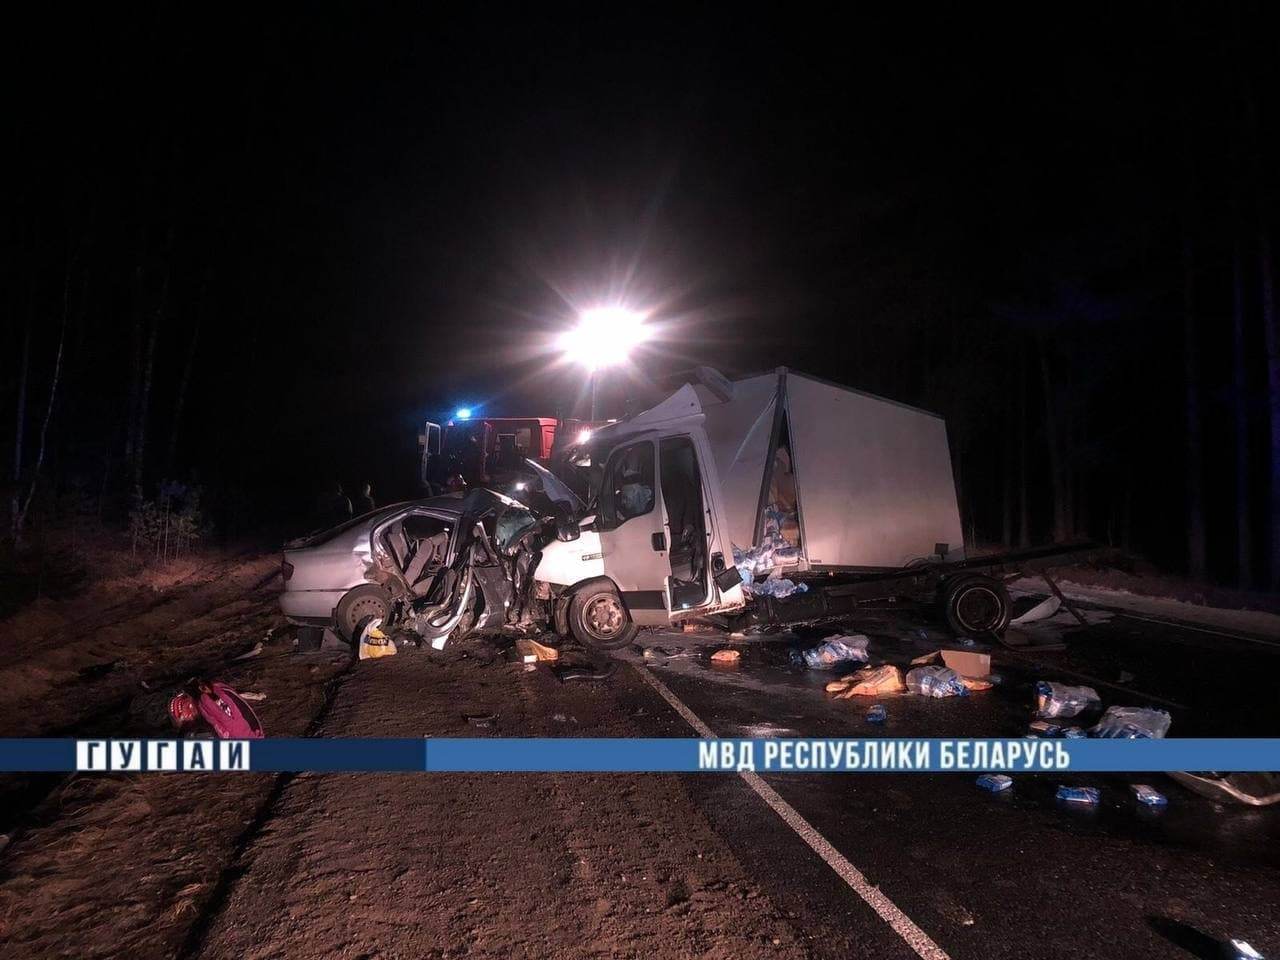 Родители, которые ехали к родственникам в Гродненскую область, погибли в ДТП с грузовиком, выжил только ребенок. СК: отец уснул за рулем